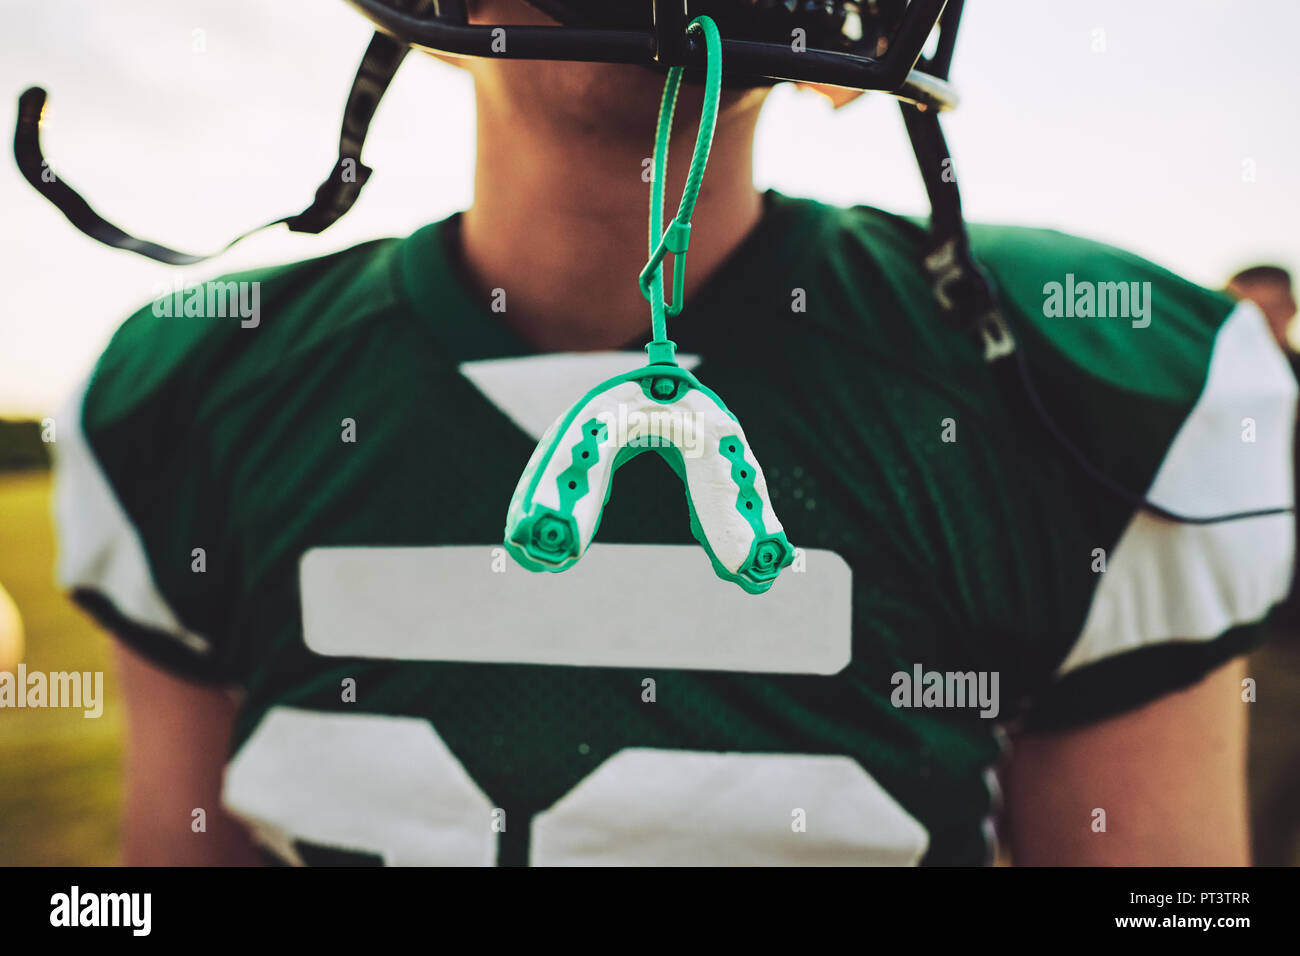 Primer plano de un protector bucal colgando el casco de un jugador de fútbol americano durante una sesión de práctica en equipo Foto de stock